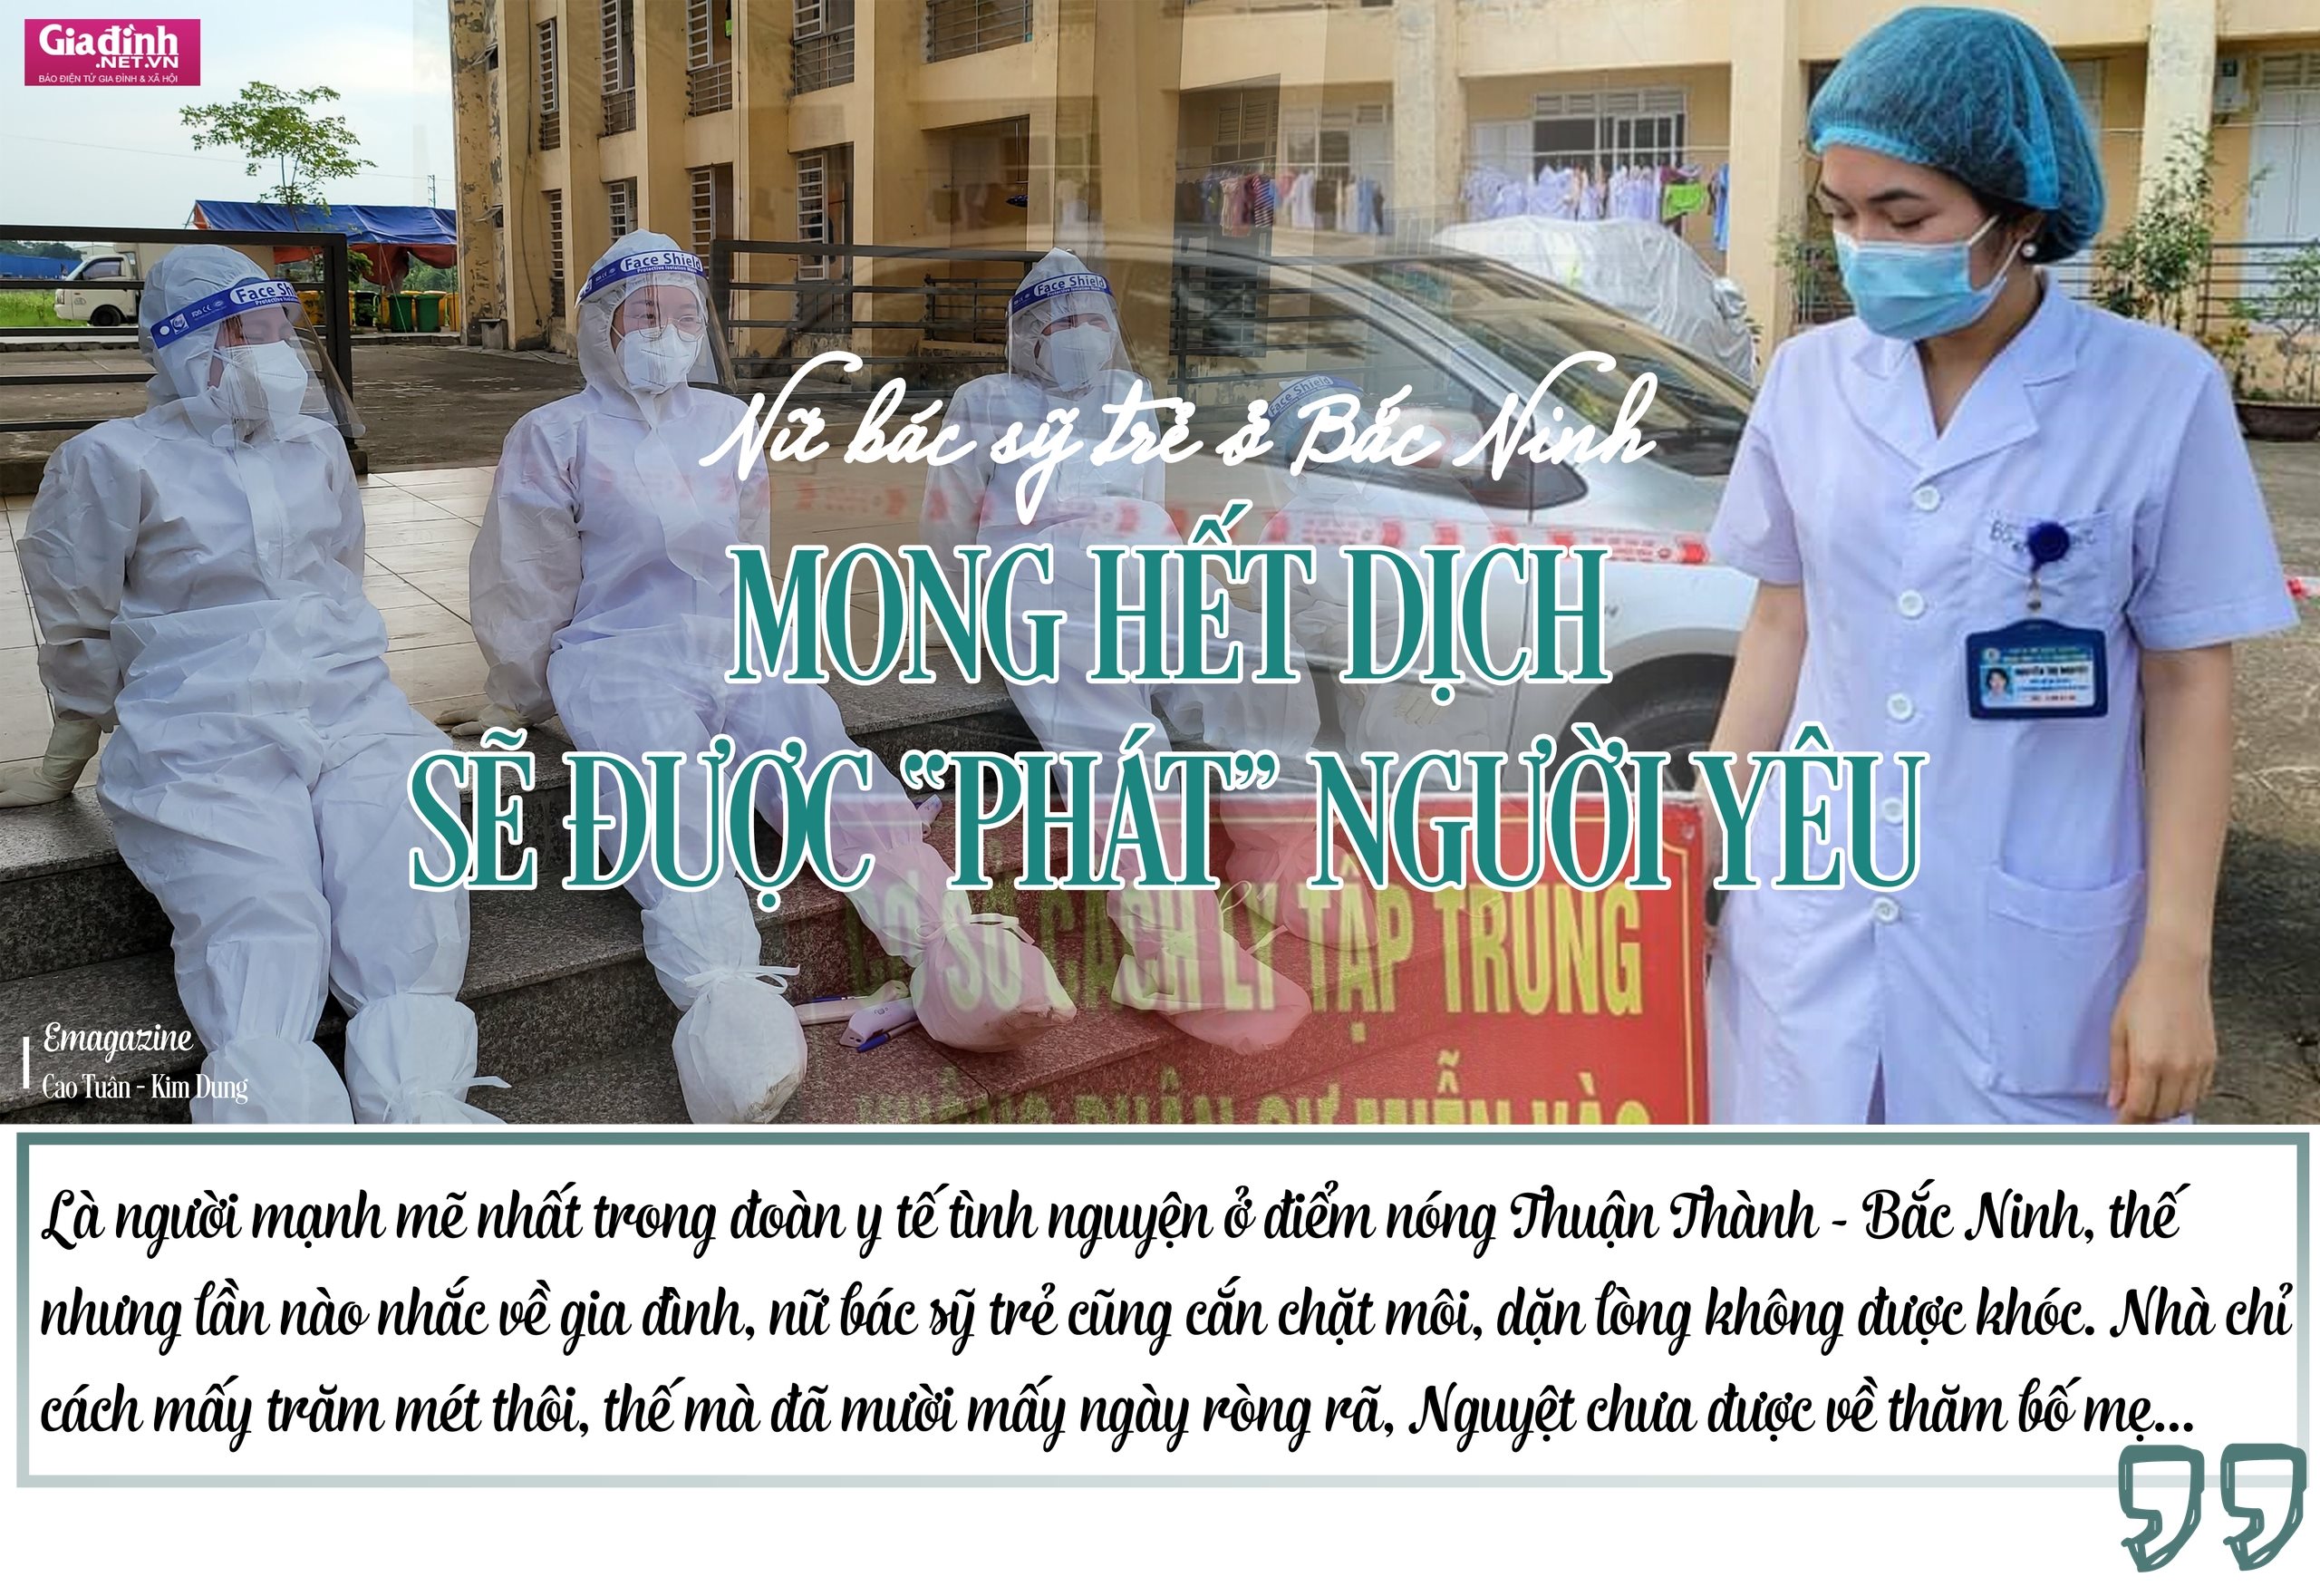 Nữ bác sỹ trẻ ở Bắc Ninh mong hết dịch về nhà sẽ được... “phát” người yêu - 1